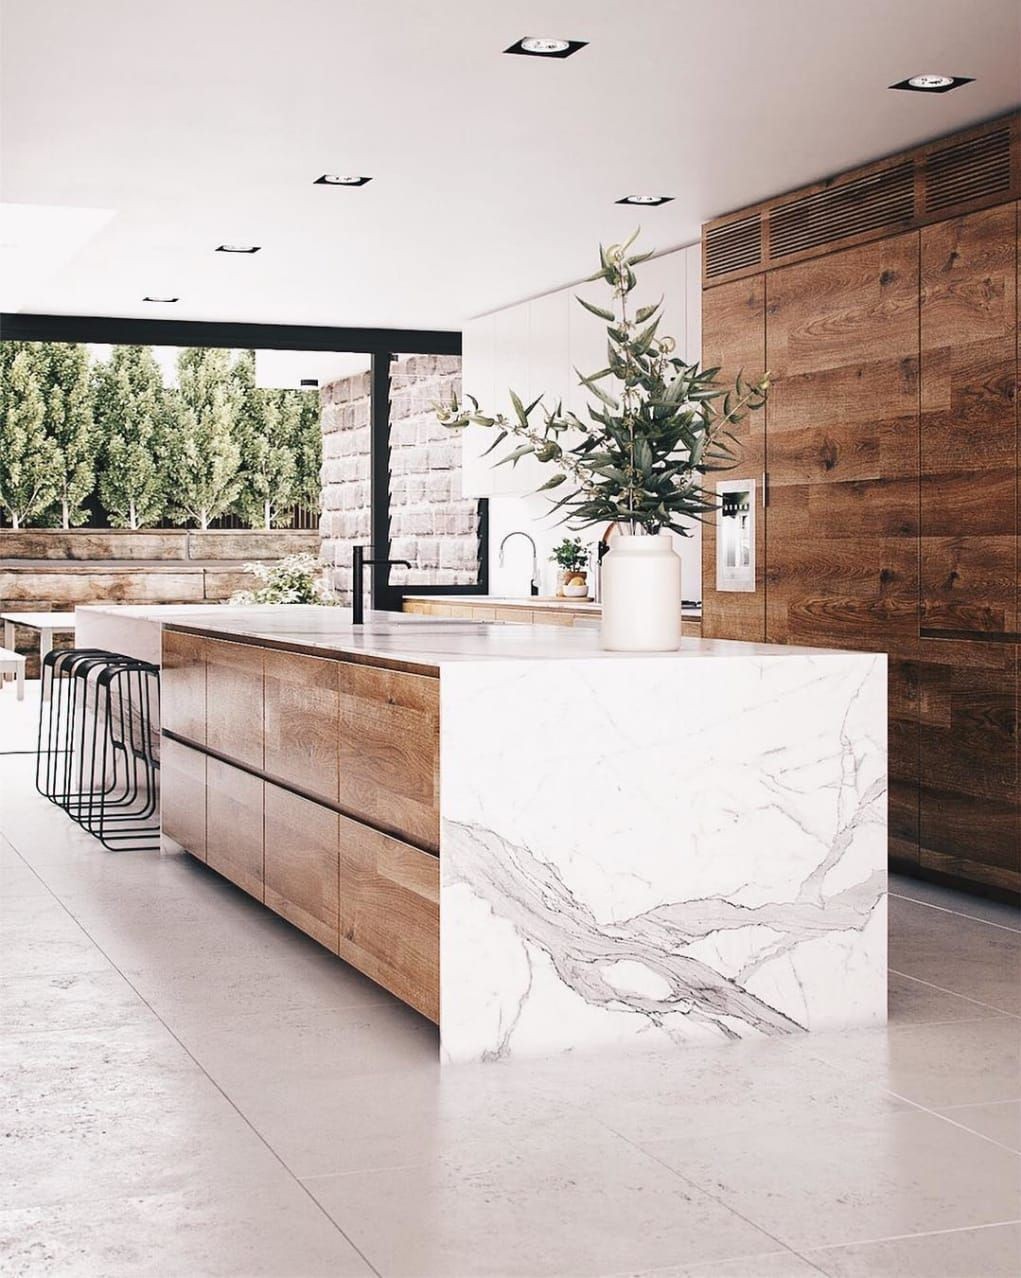 
Đá cẩm thạch cùng với gỗ nâu mang đến một sự hấp dẫn cho căn bếp của bạn
